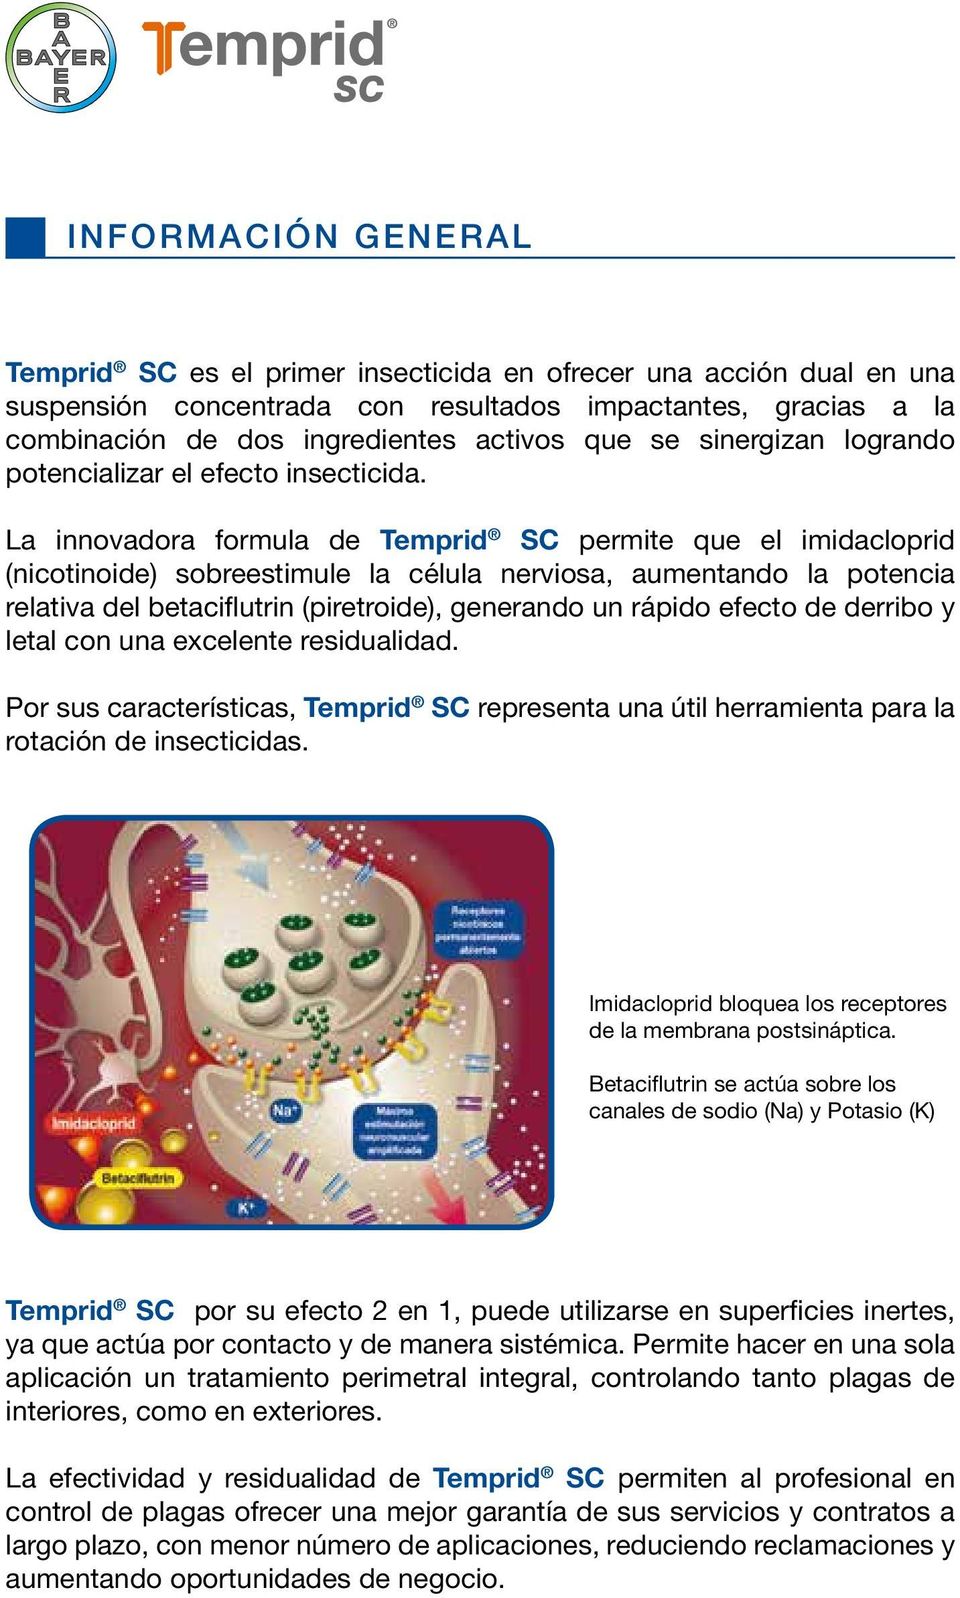 La innovadora formula de Temprid SC permite que el imidacloprid (nicotinoide) sobreestimule la célula nerviosa, aumentando la potencia relativa del betaciflutrin (piretroide), generando un rápido